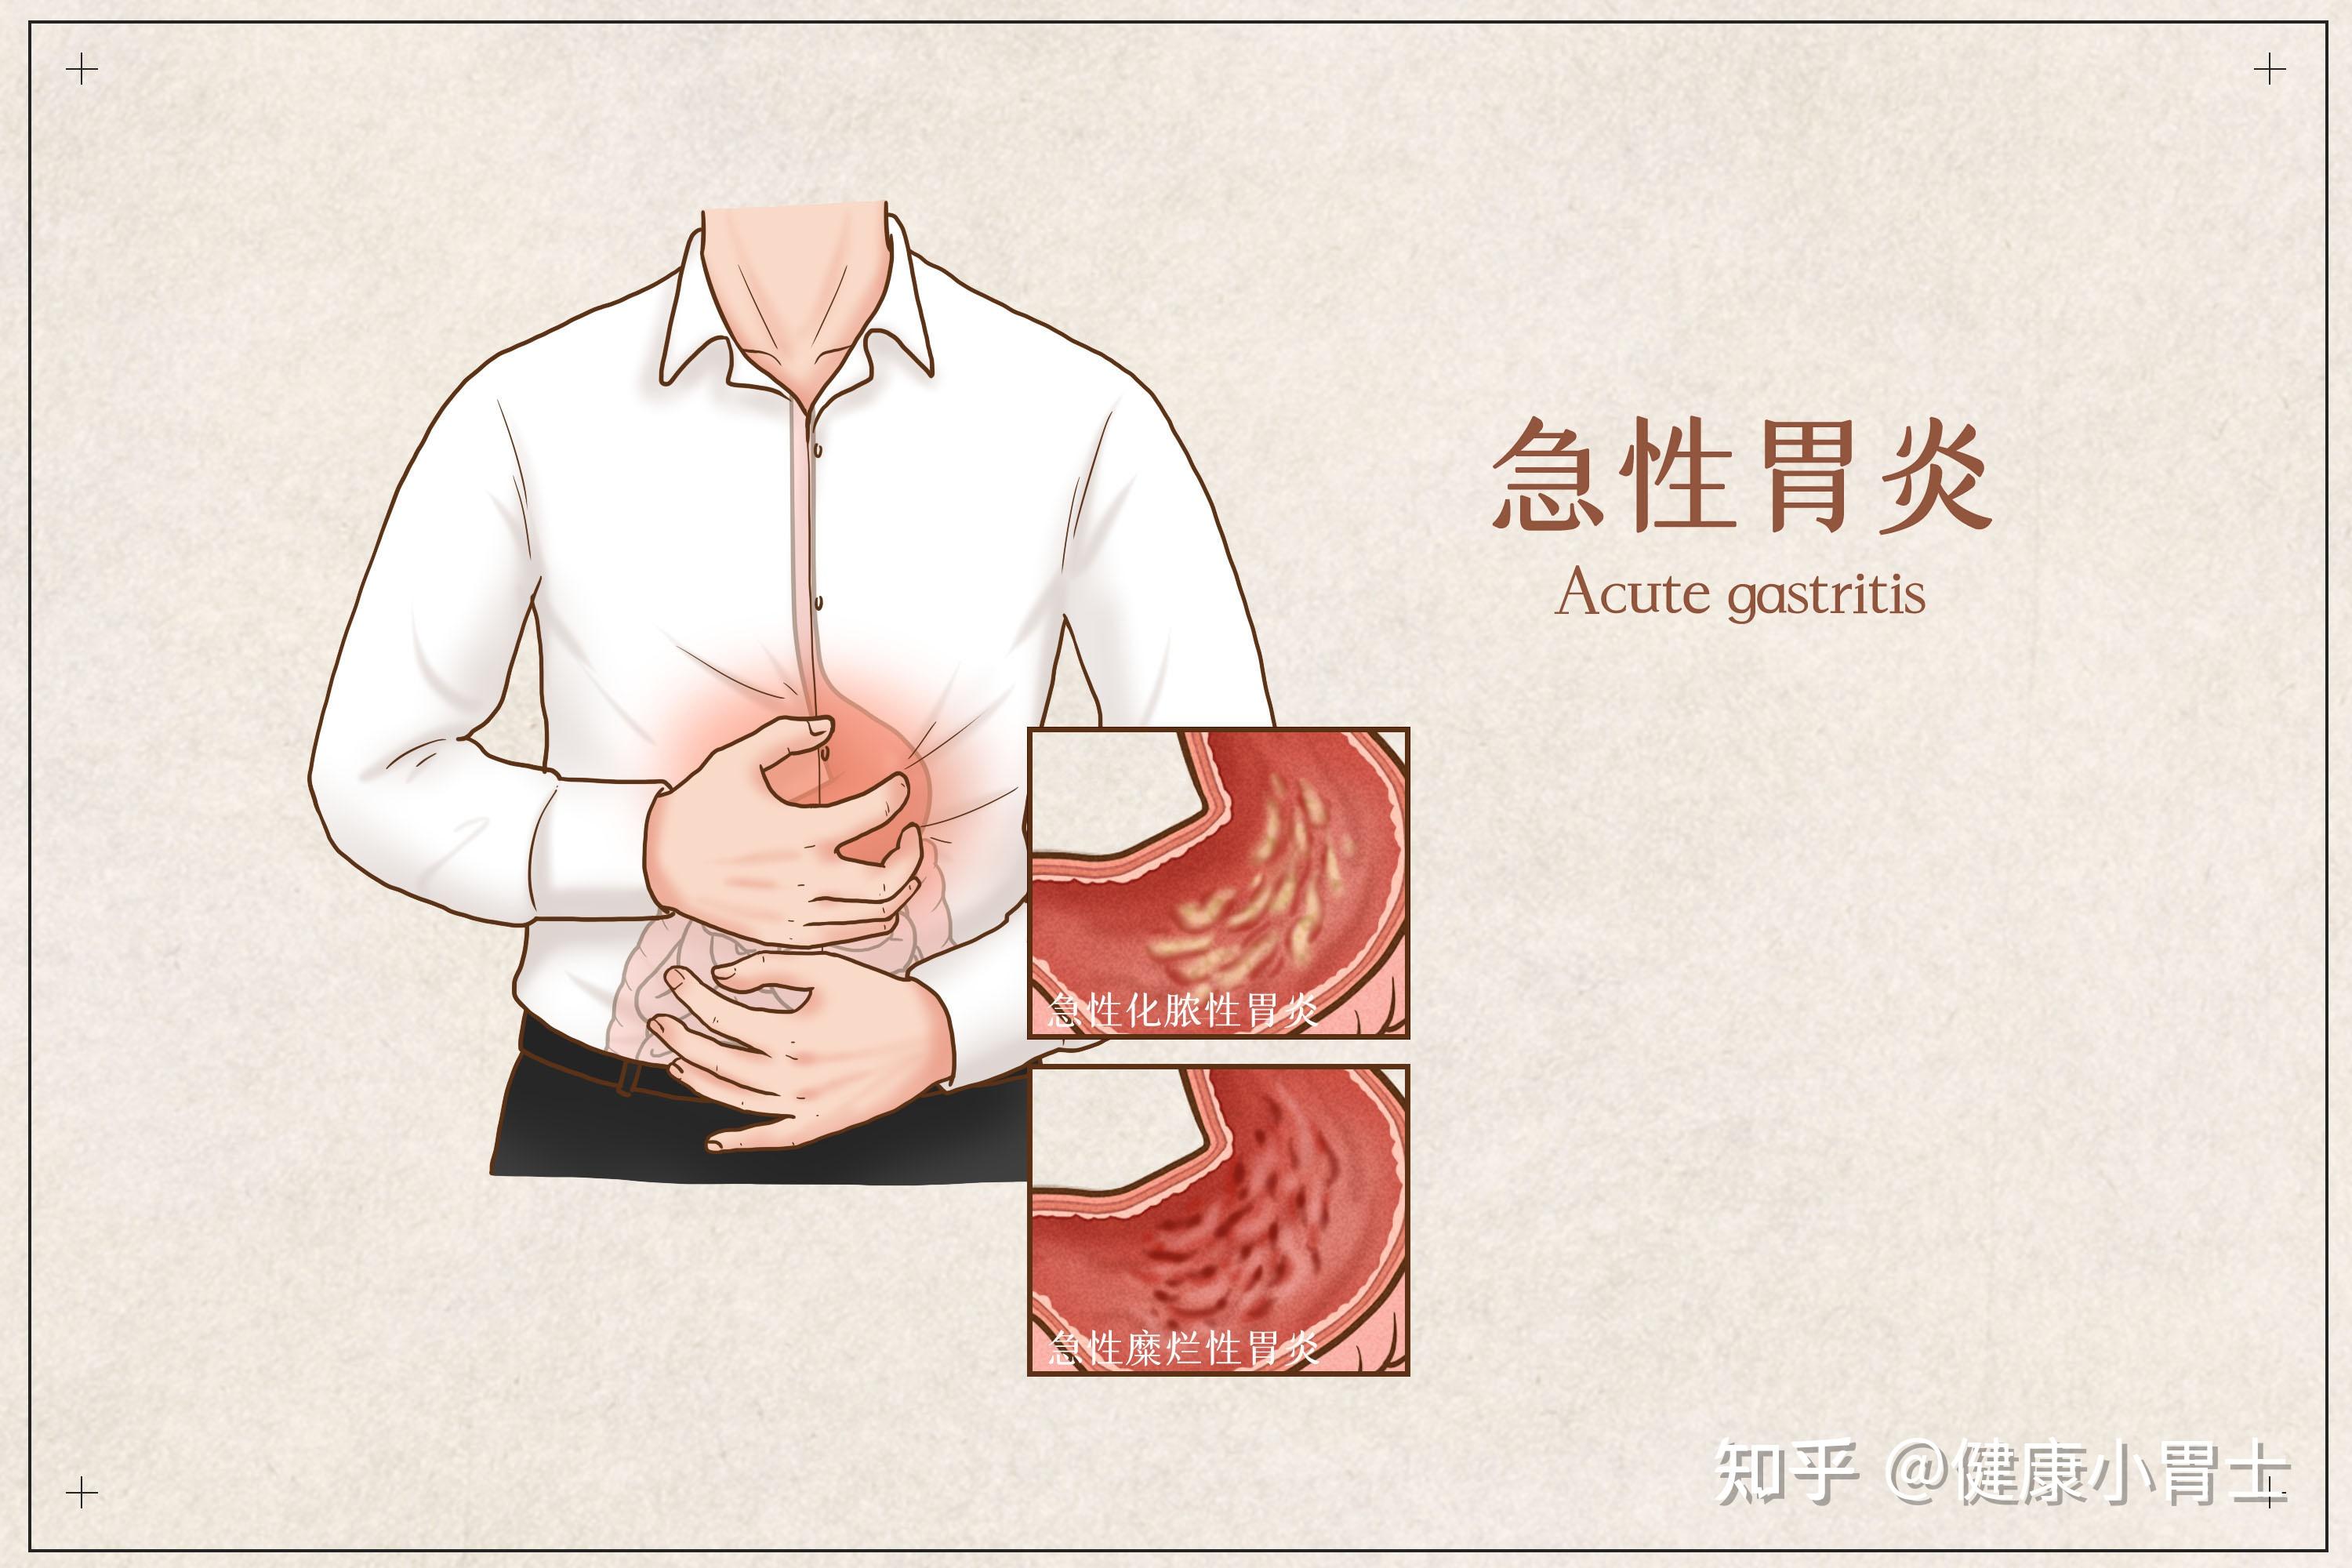 大圣胶囊胃镜:胃炎到胃癌只有4步,学好这4招逆转乾坤!